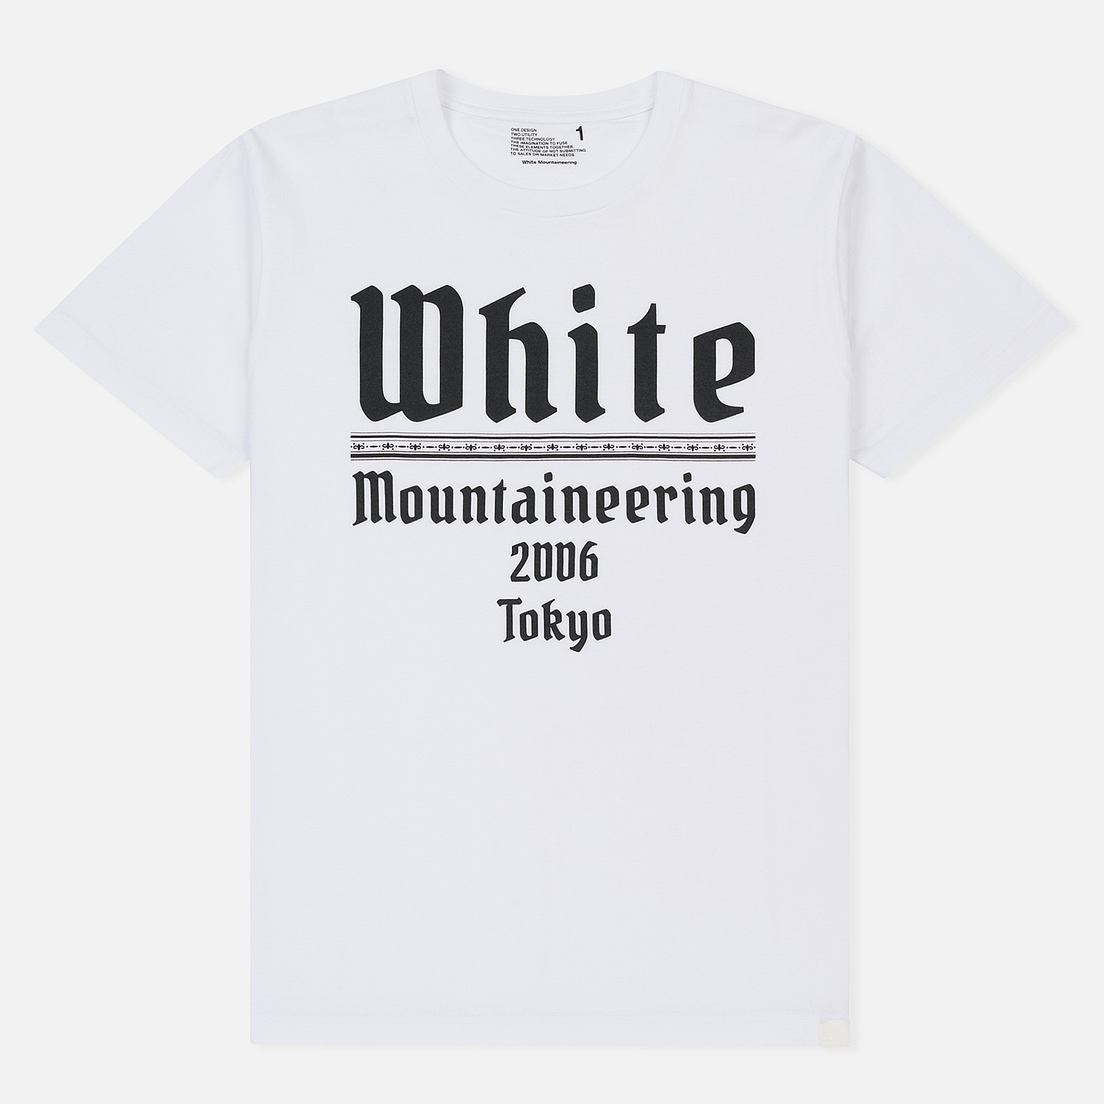 White Mountaineering Мужская футболка Printed White Mountaineering 2006 Tokyo